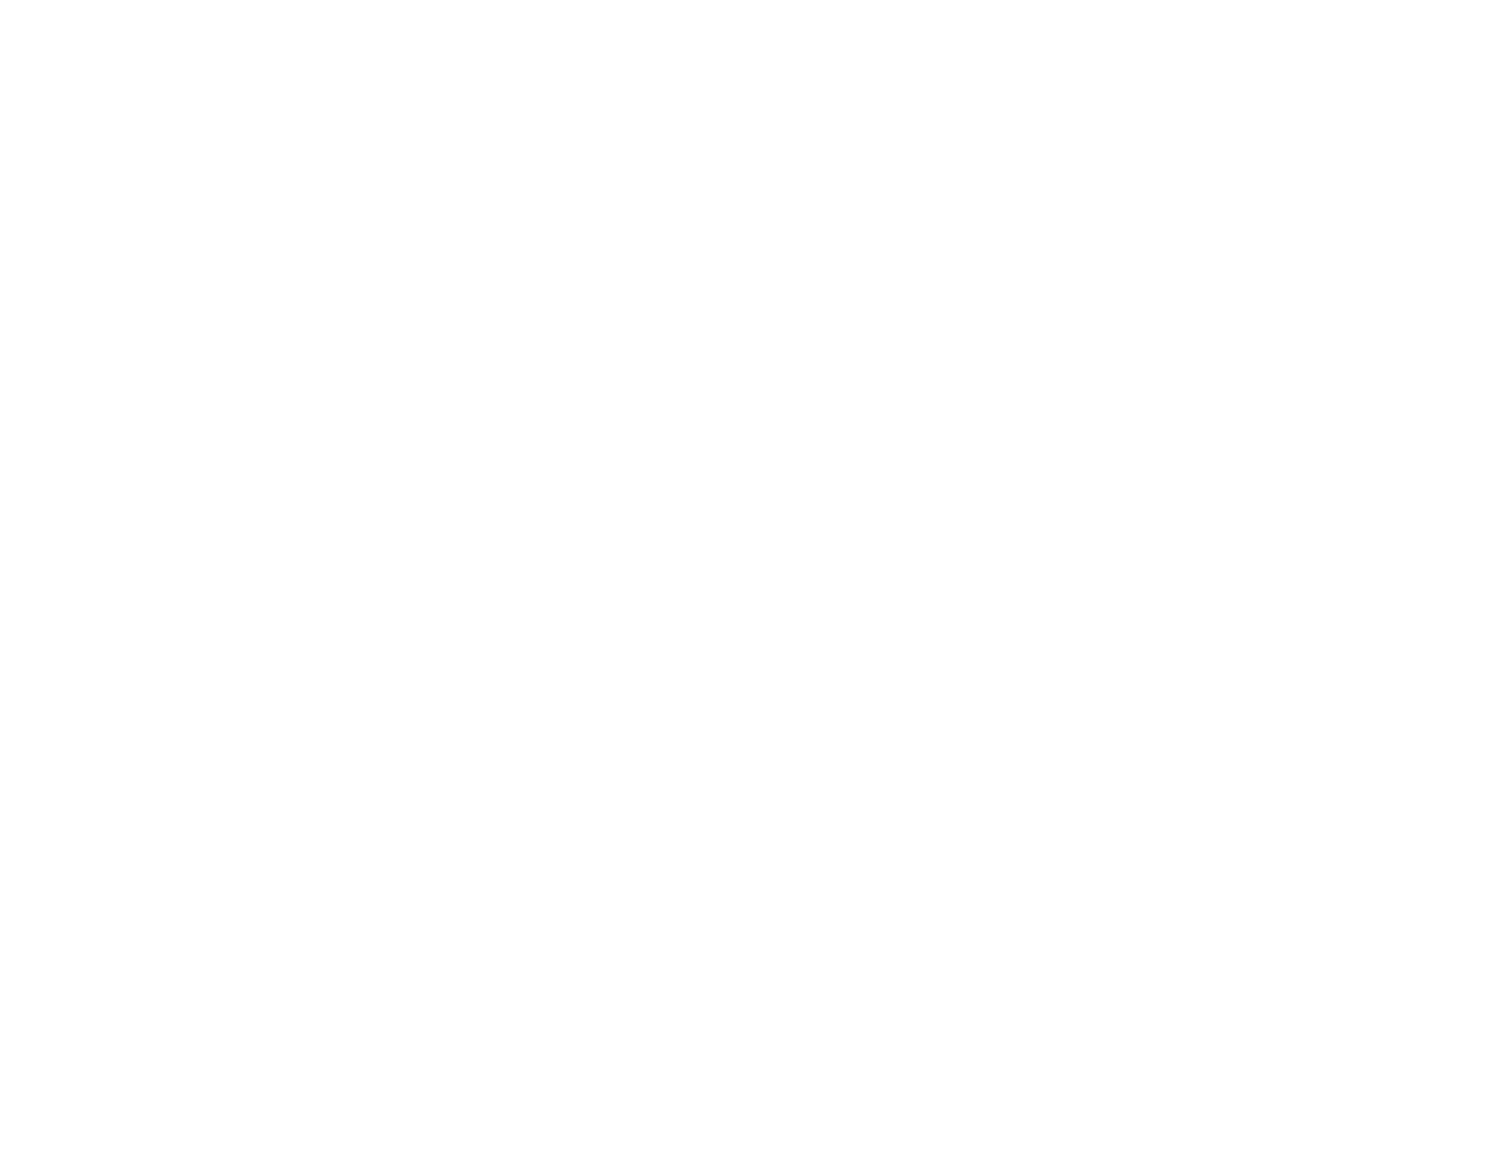 Ojai Valley Museum